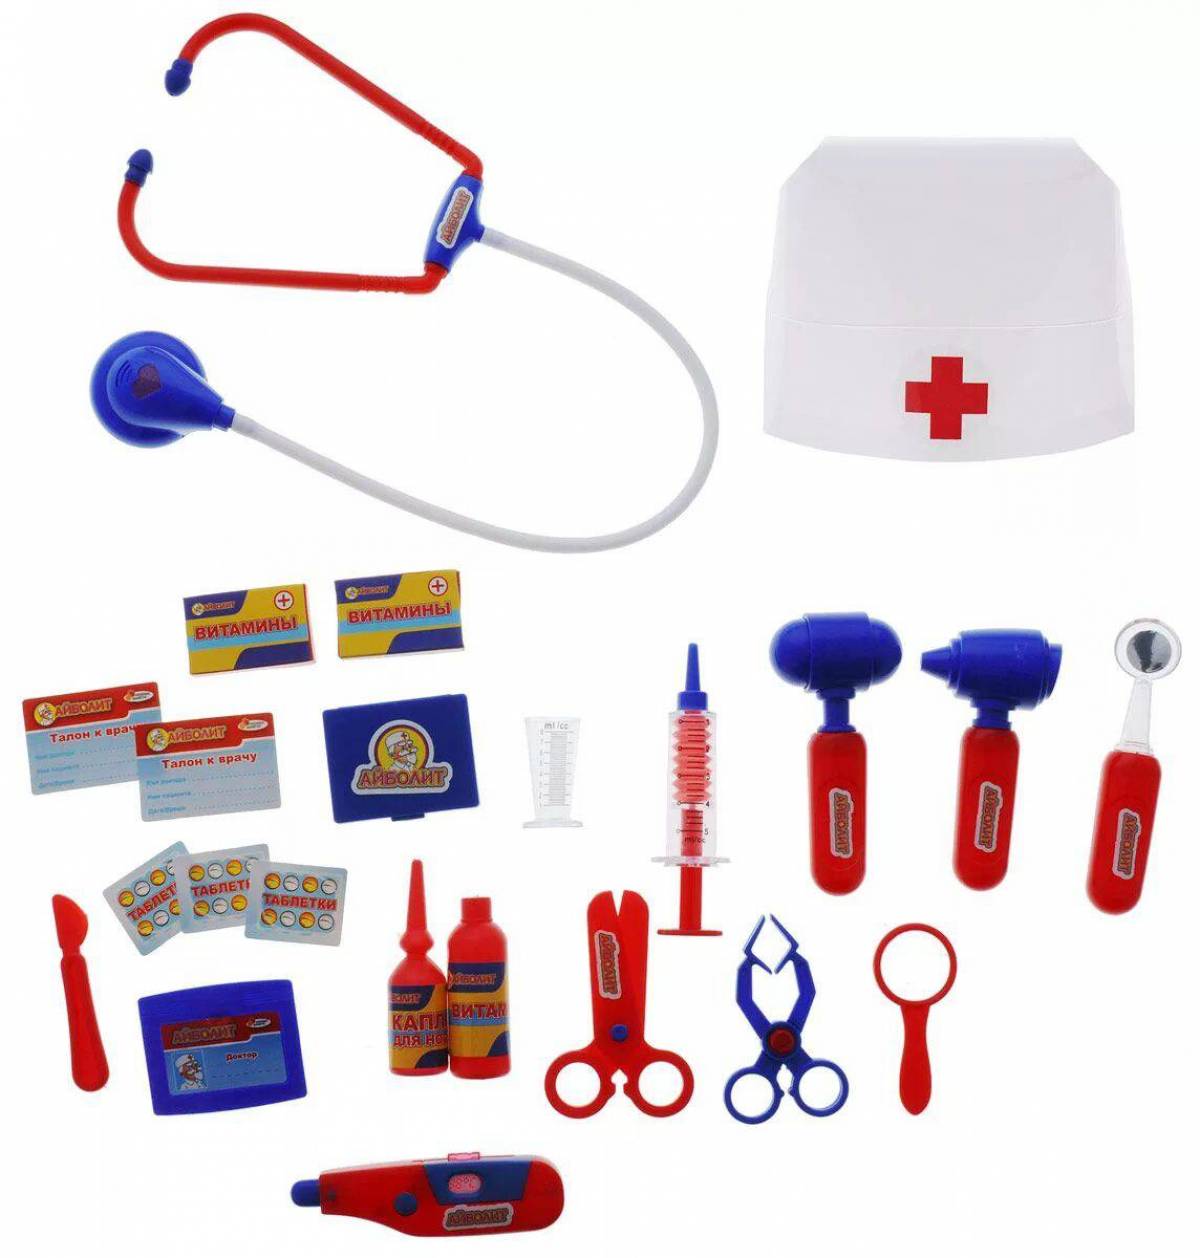 Медицинские инструменты для детей #24